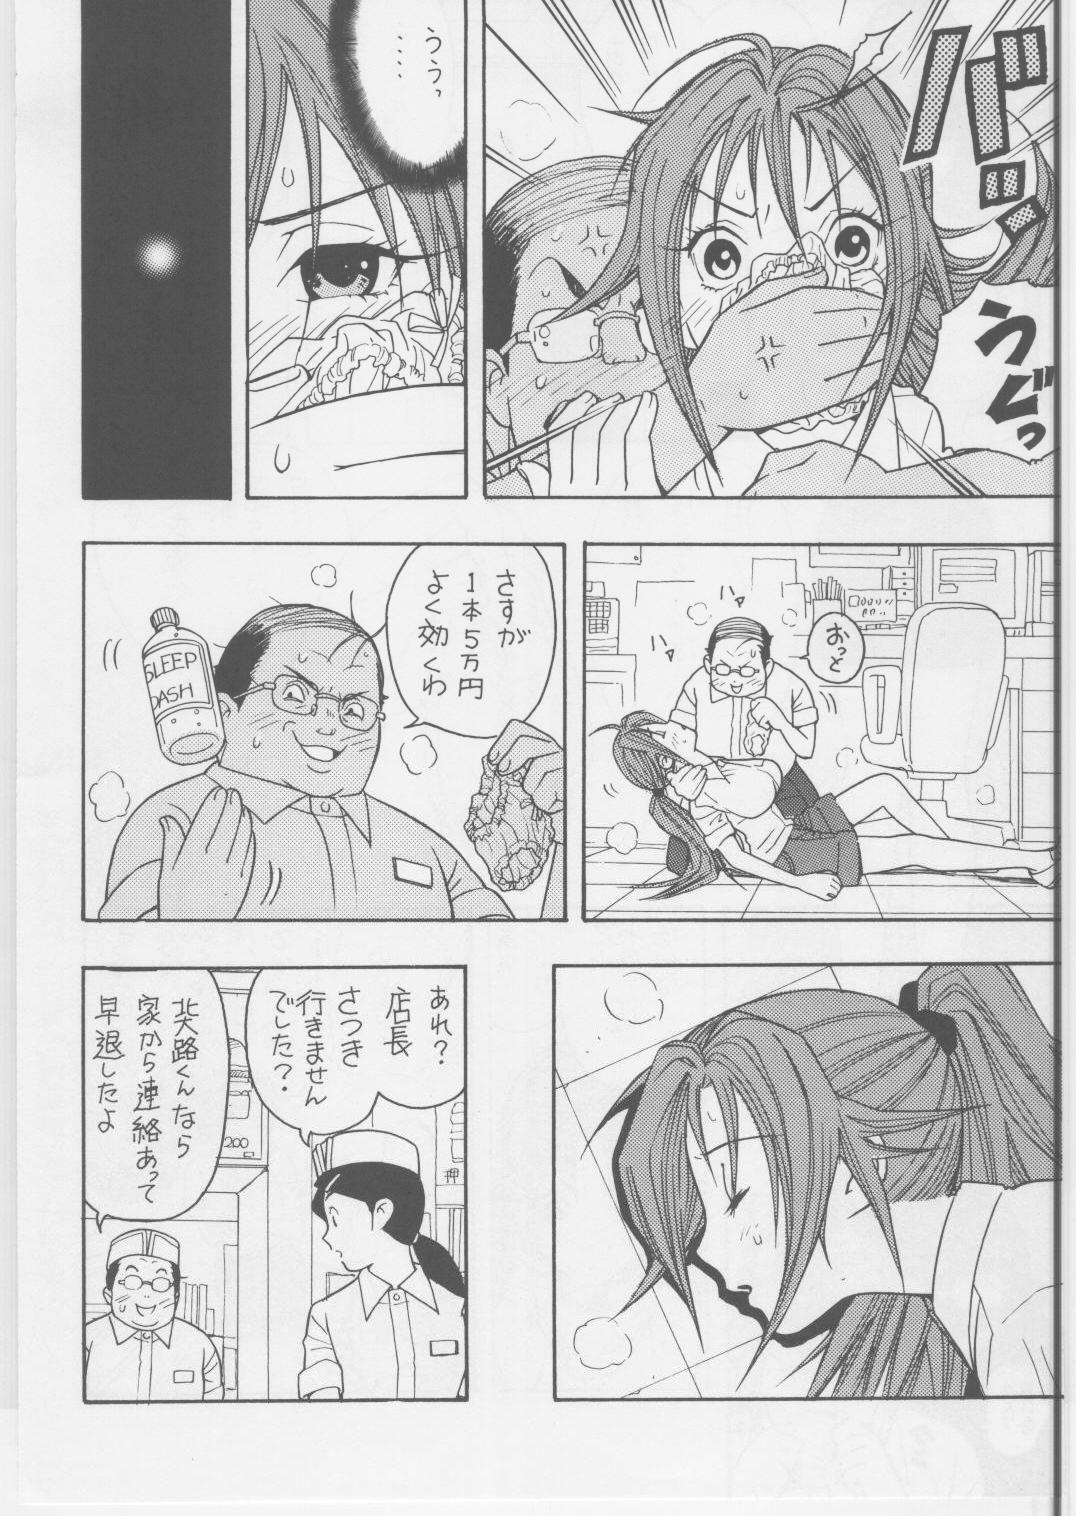 Slapping Ichigo DE Pon 2 - Ichigo 100 8teenxxx - Page 5